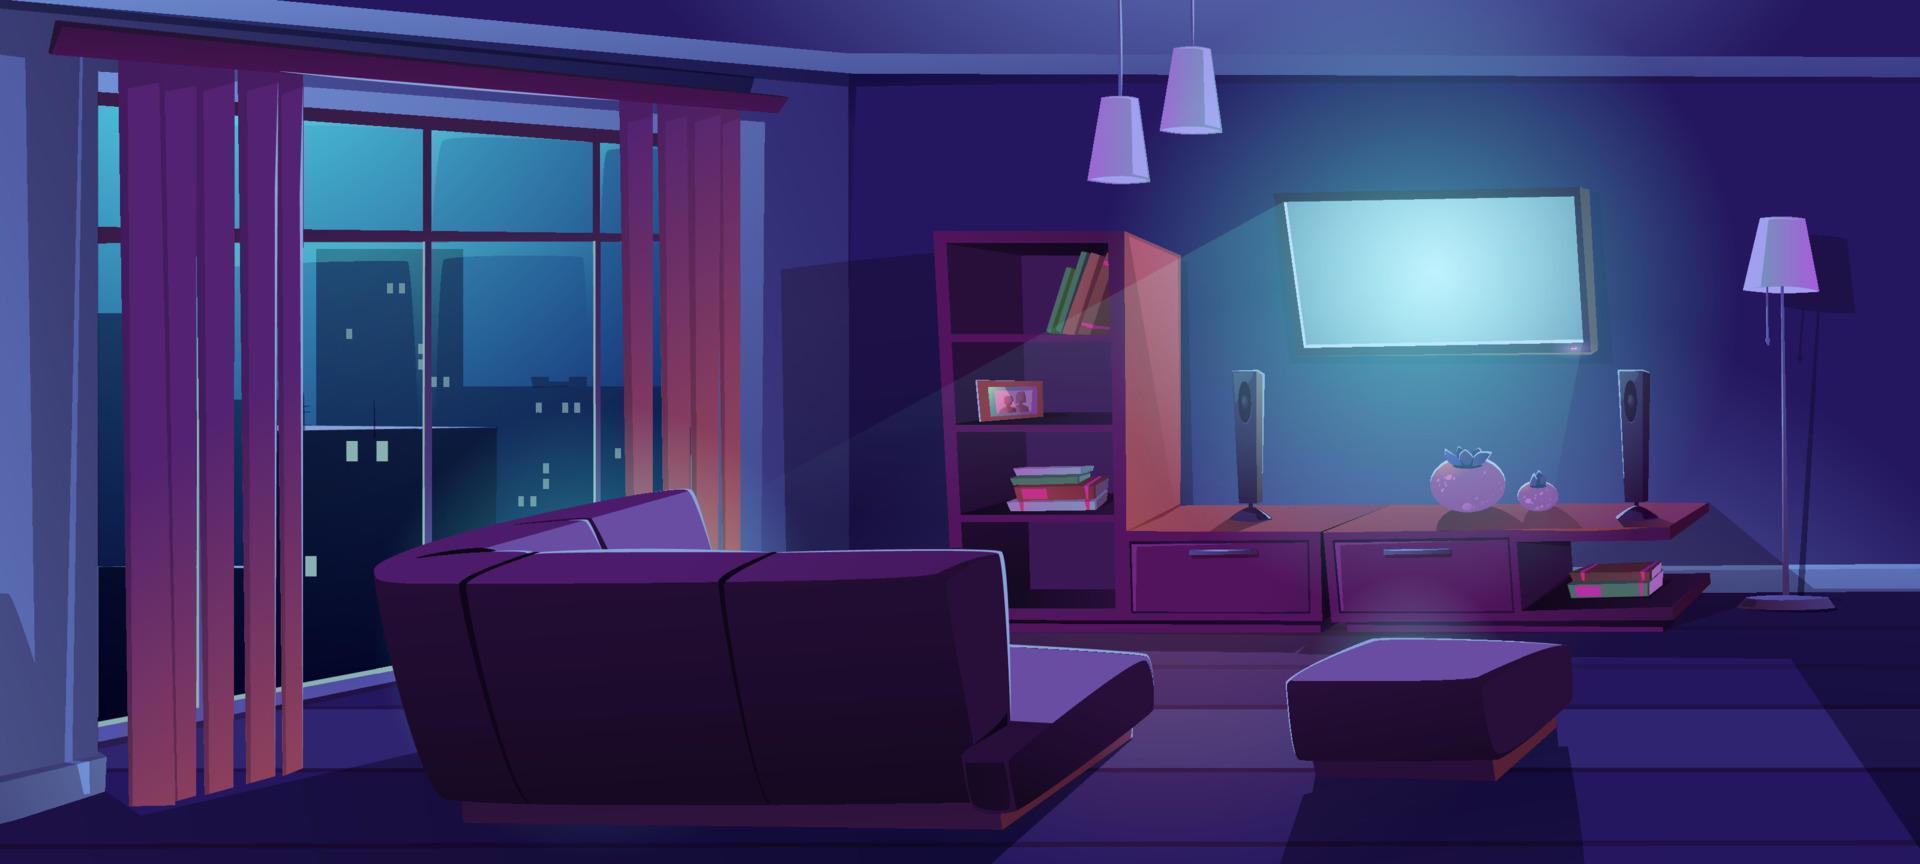 interior da sala de estar com tv, sofá durante a noite vetor